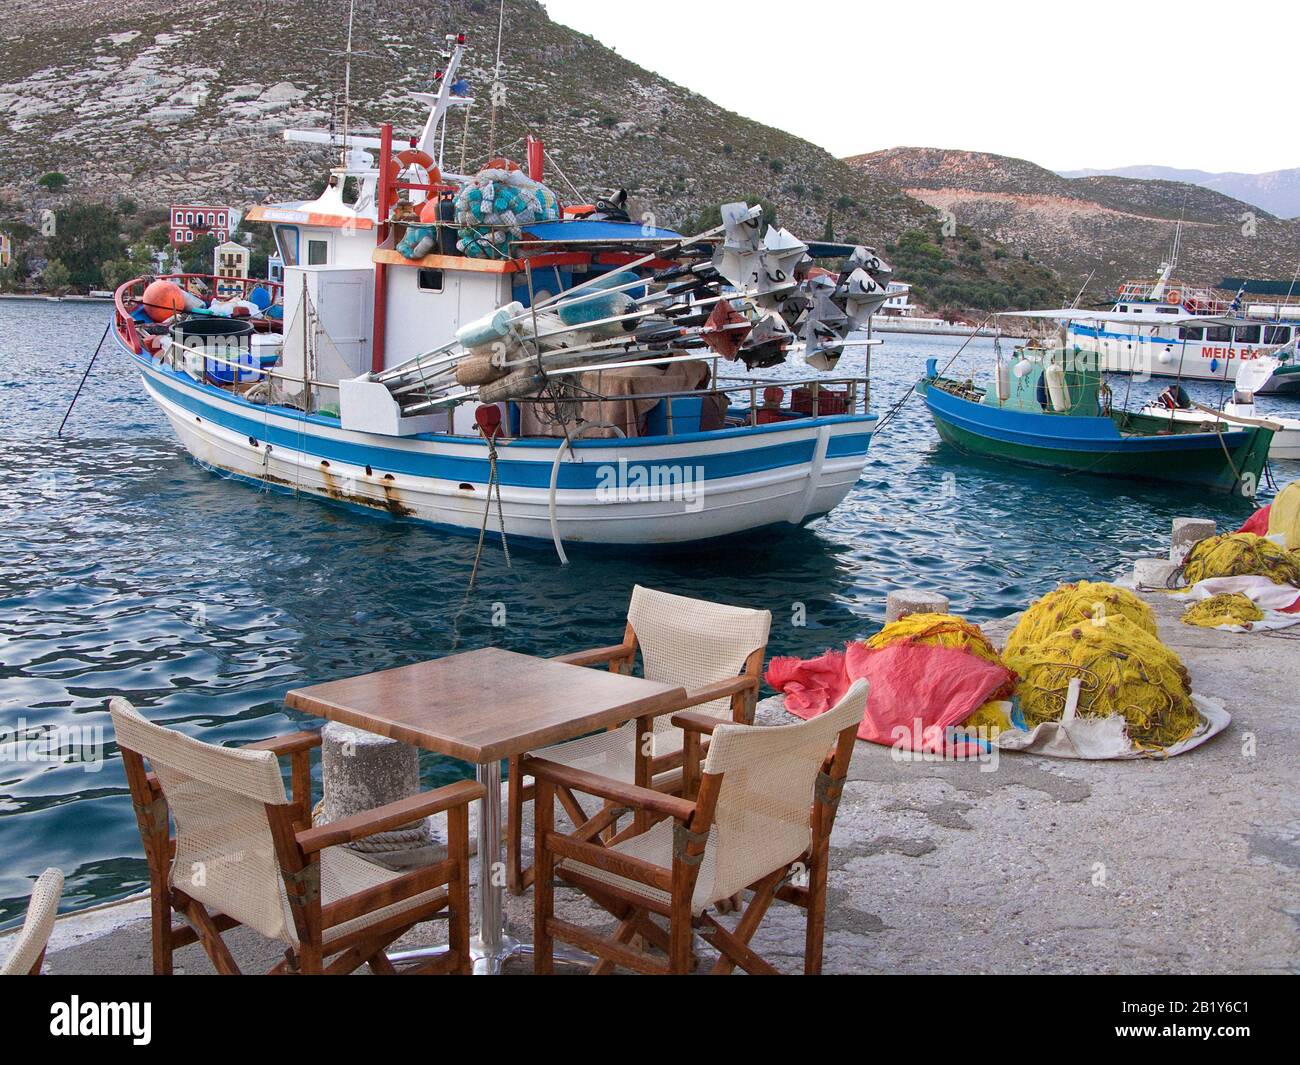 Ambiance nocturne sur l'île de Meis, également connue sous le nom de Kastellorizo, bateaux de pêche dans le port, île de Meis, Grèce Banque D'Images